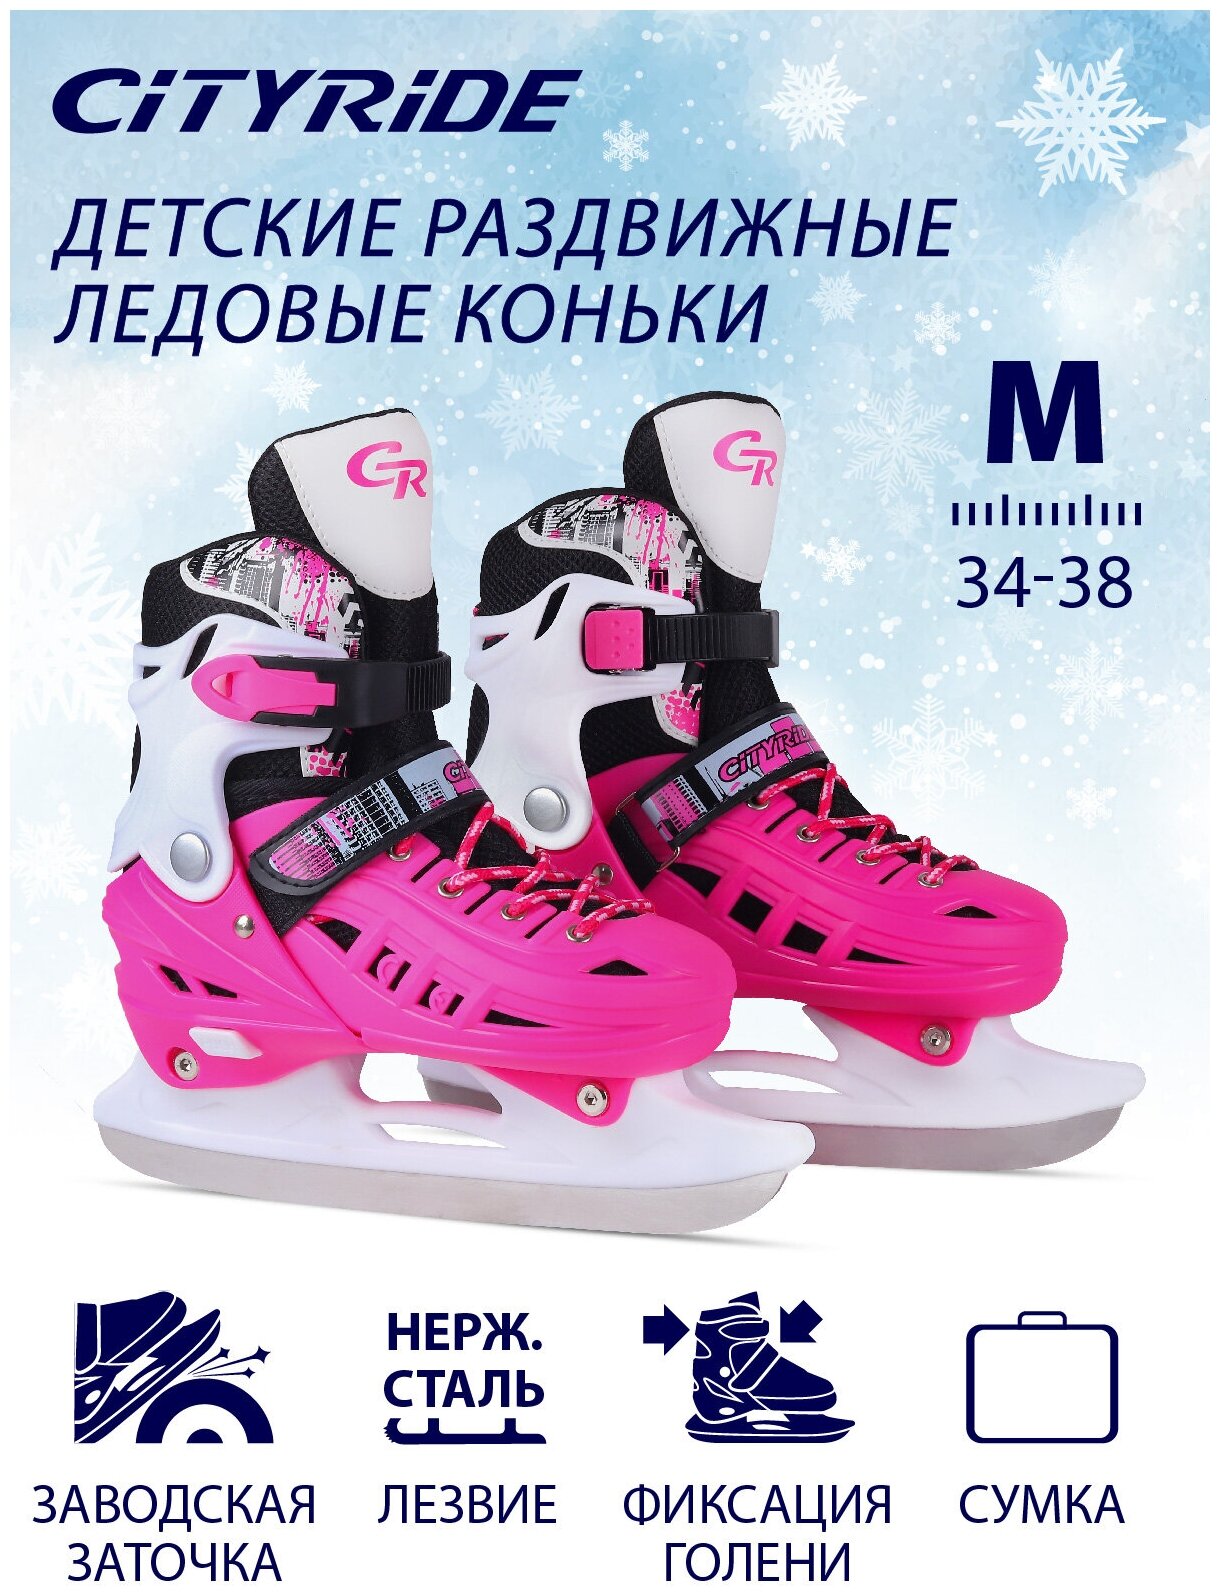 Детские раздвижные ледовые коньки, лезвие не ржавеющая сталь, пластиковый мысок, розовый, M(34-38)